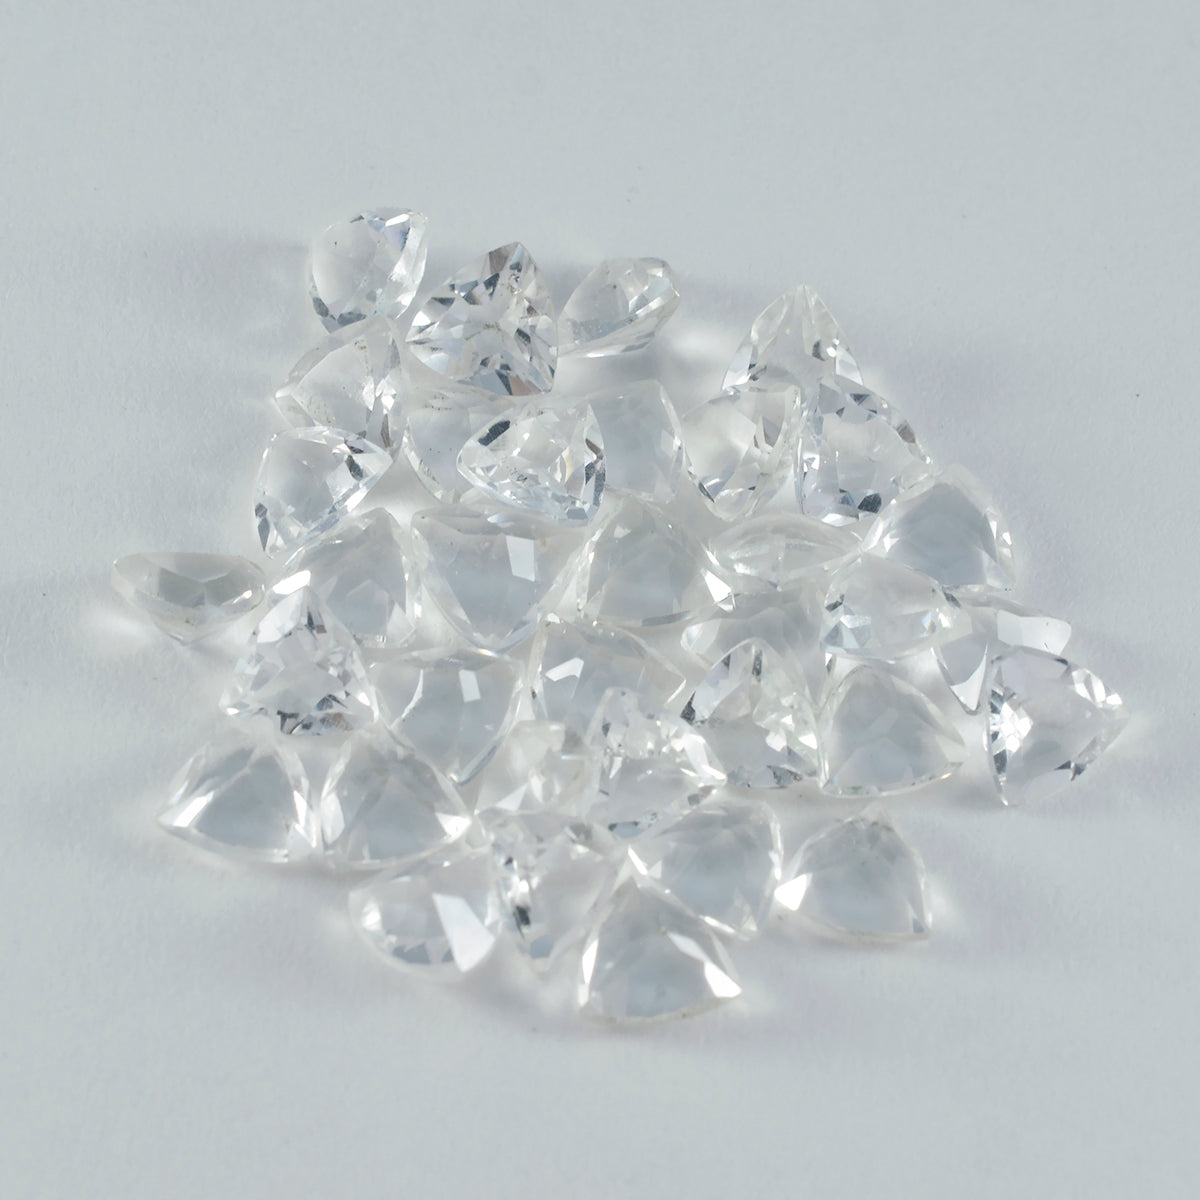 Riyogems 1 Stück weißer Kristallquarz, facettiert, 6 x 6 mm, Billionenform, süßer Qualitätsstein